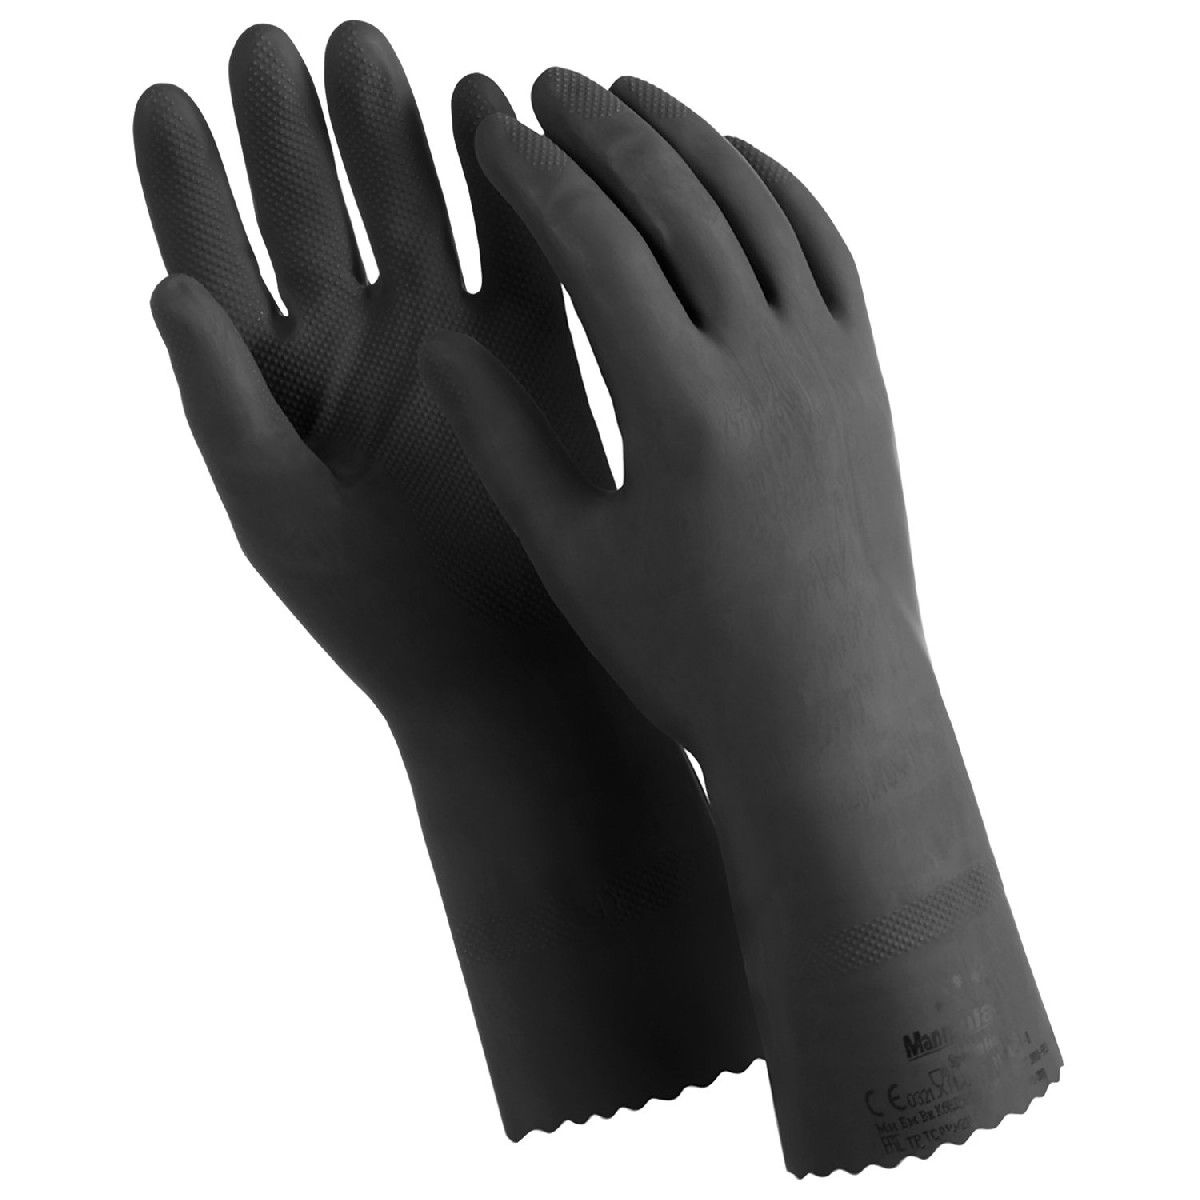 Перчатки латексные MANIPULA КЩС-2, ультратонкие, р. 7-7,5 (S), черные, L-U-032/CG-943